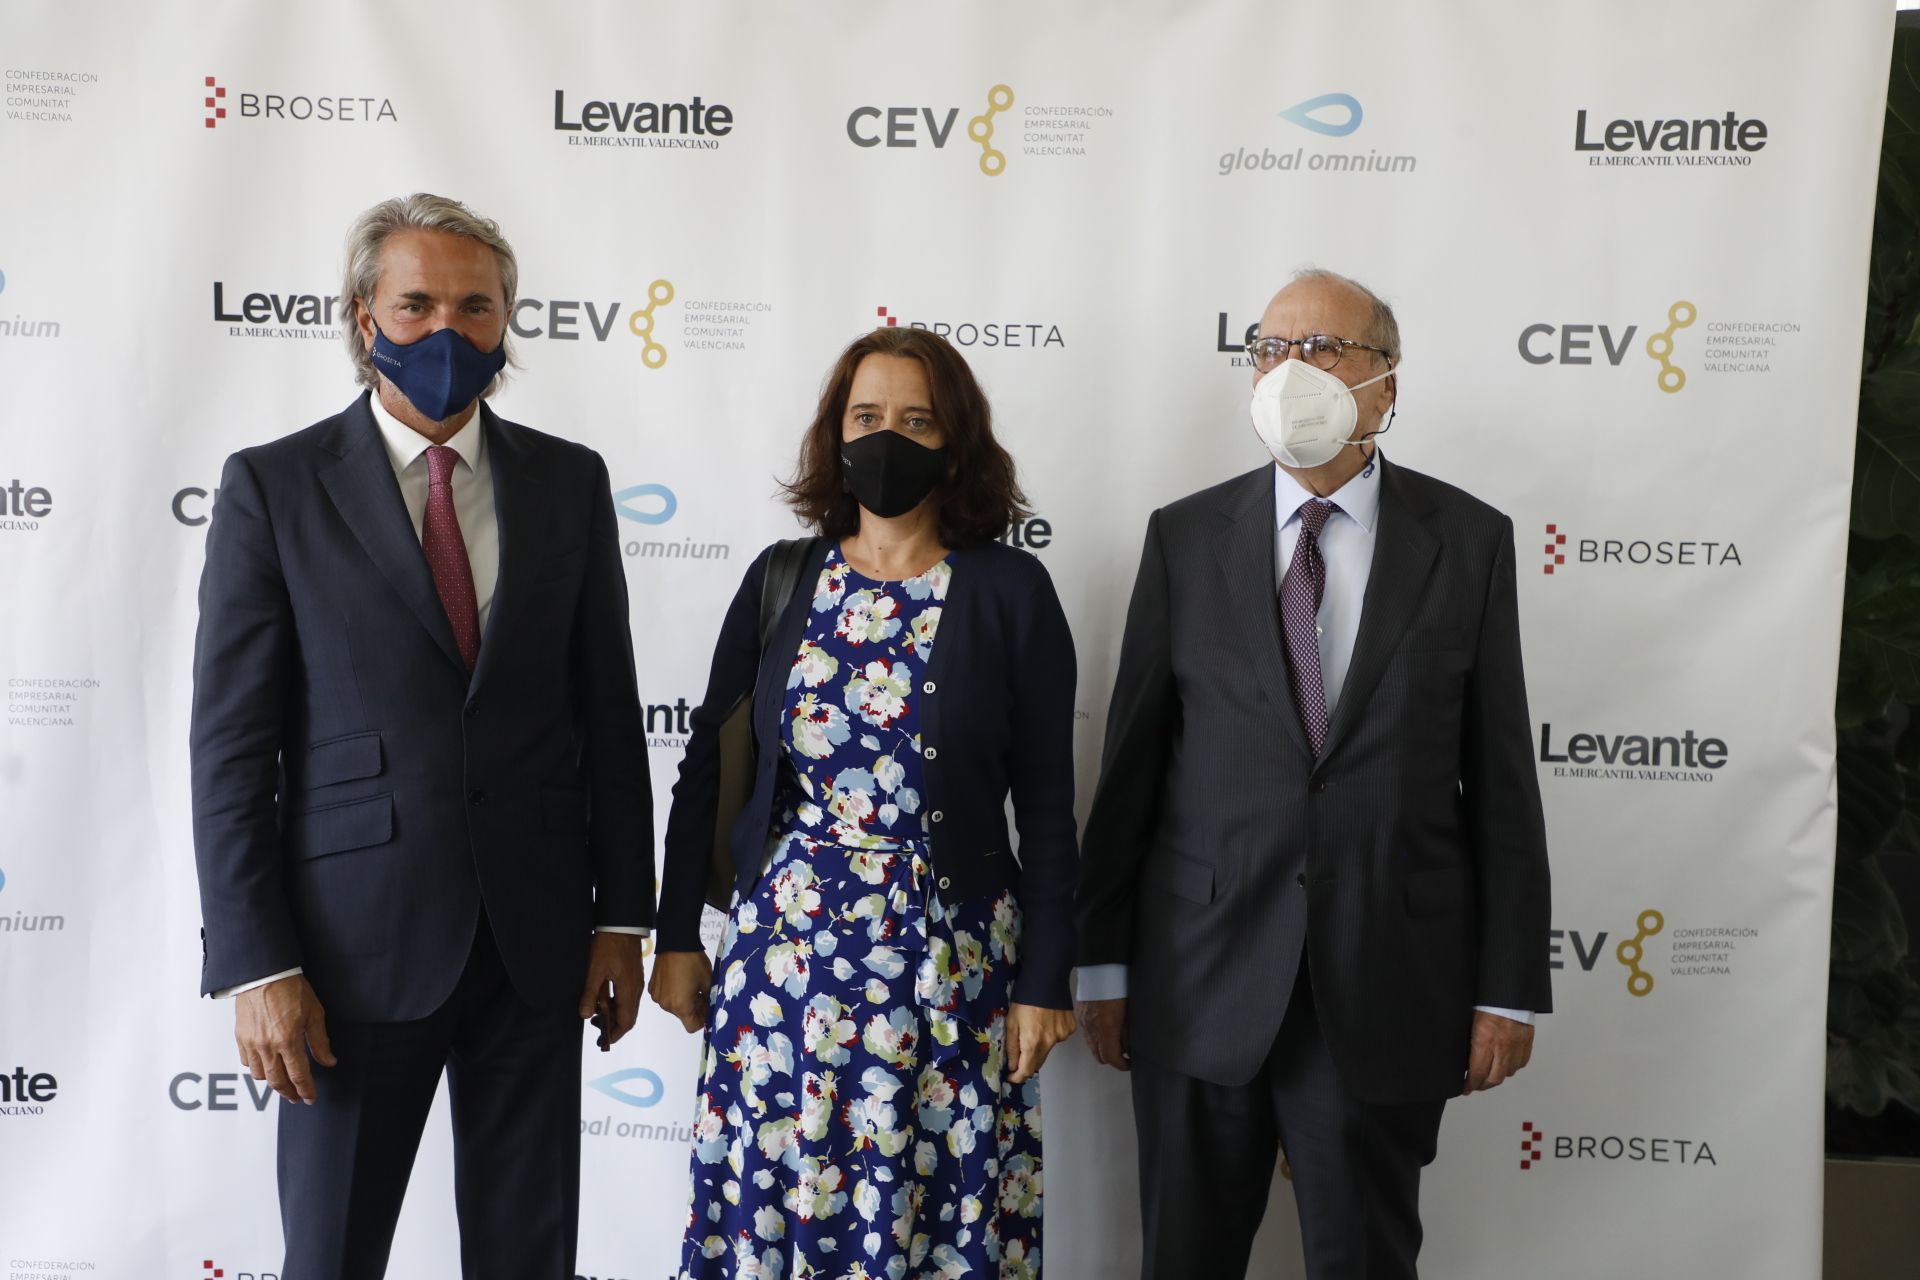 La política y la economía valenciana se dan cita en el coloquio de la vicepresenta Nadia Calviño que organiza Levante-EMV